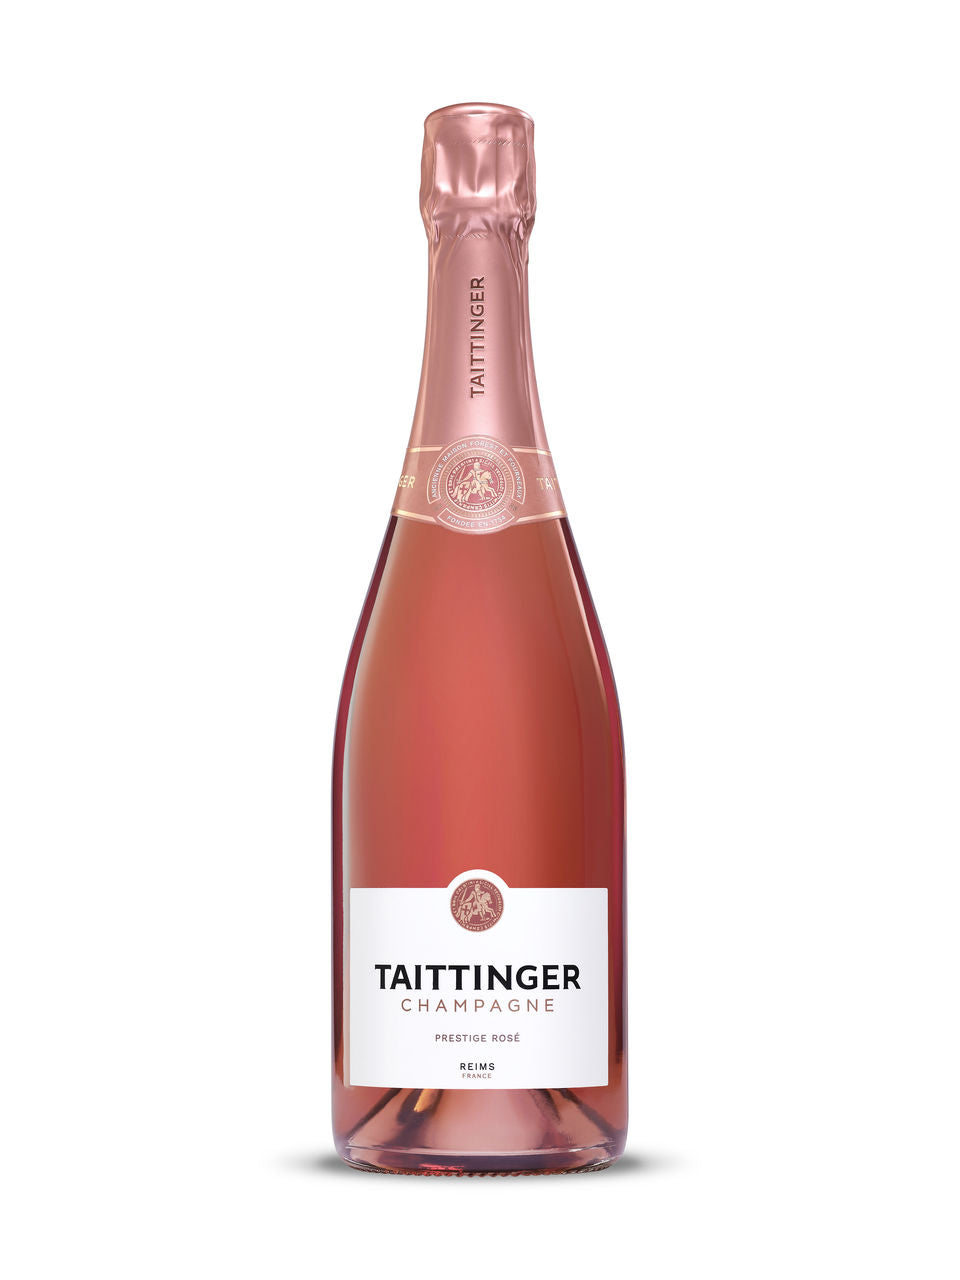 Taittinger Prestige Rose Champagne 750 ml bottle